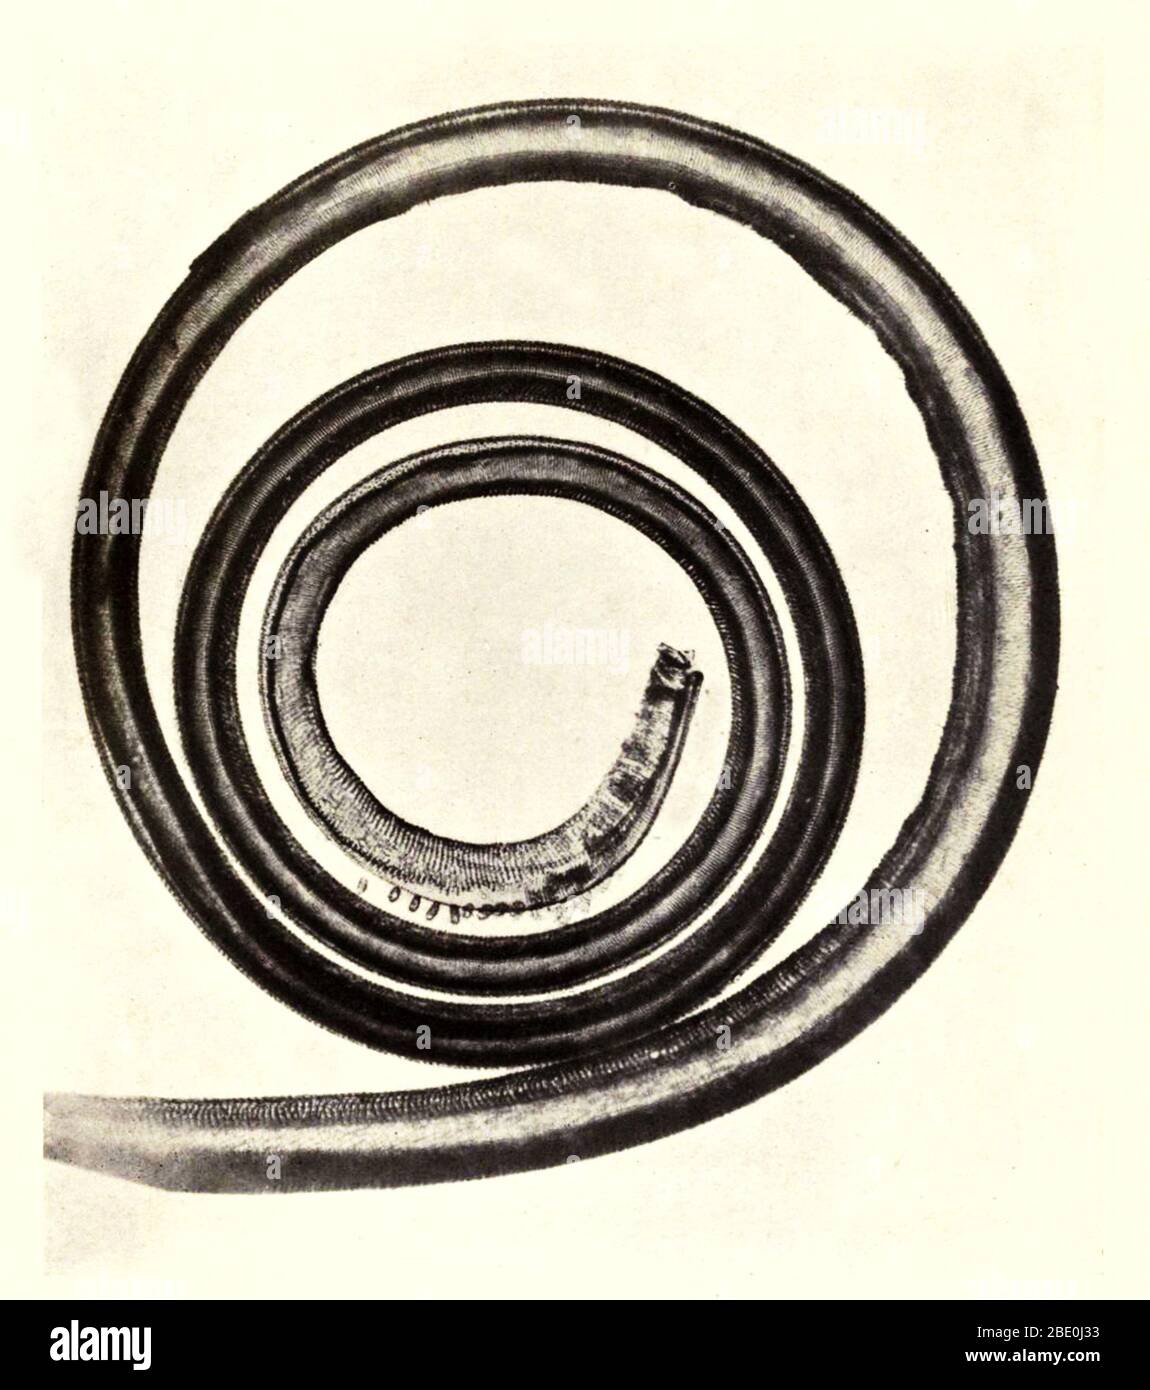 Schmetterlingszunge. Vergrößerung: 50fach. Fotomikrograph von Arthur E Smith in den frühen 1900er Jahren, mit einem kombinierten Mikroskop und Kamera. 1904 stellte die Royal Society in London eine Reihe von Smiths Fotomikrographen der Öffentlichkeit aus. Sie wurden später 1909 in einem Buch mit dem Titel "Nature Through Microscope & Camera" veröffentlicht. Sie waren die ersten Beispiele für die Photomikroskopie, die viele je gesehen hatten. Stockfoto